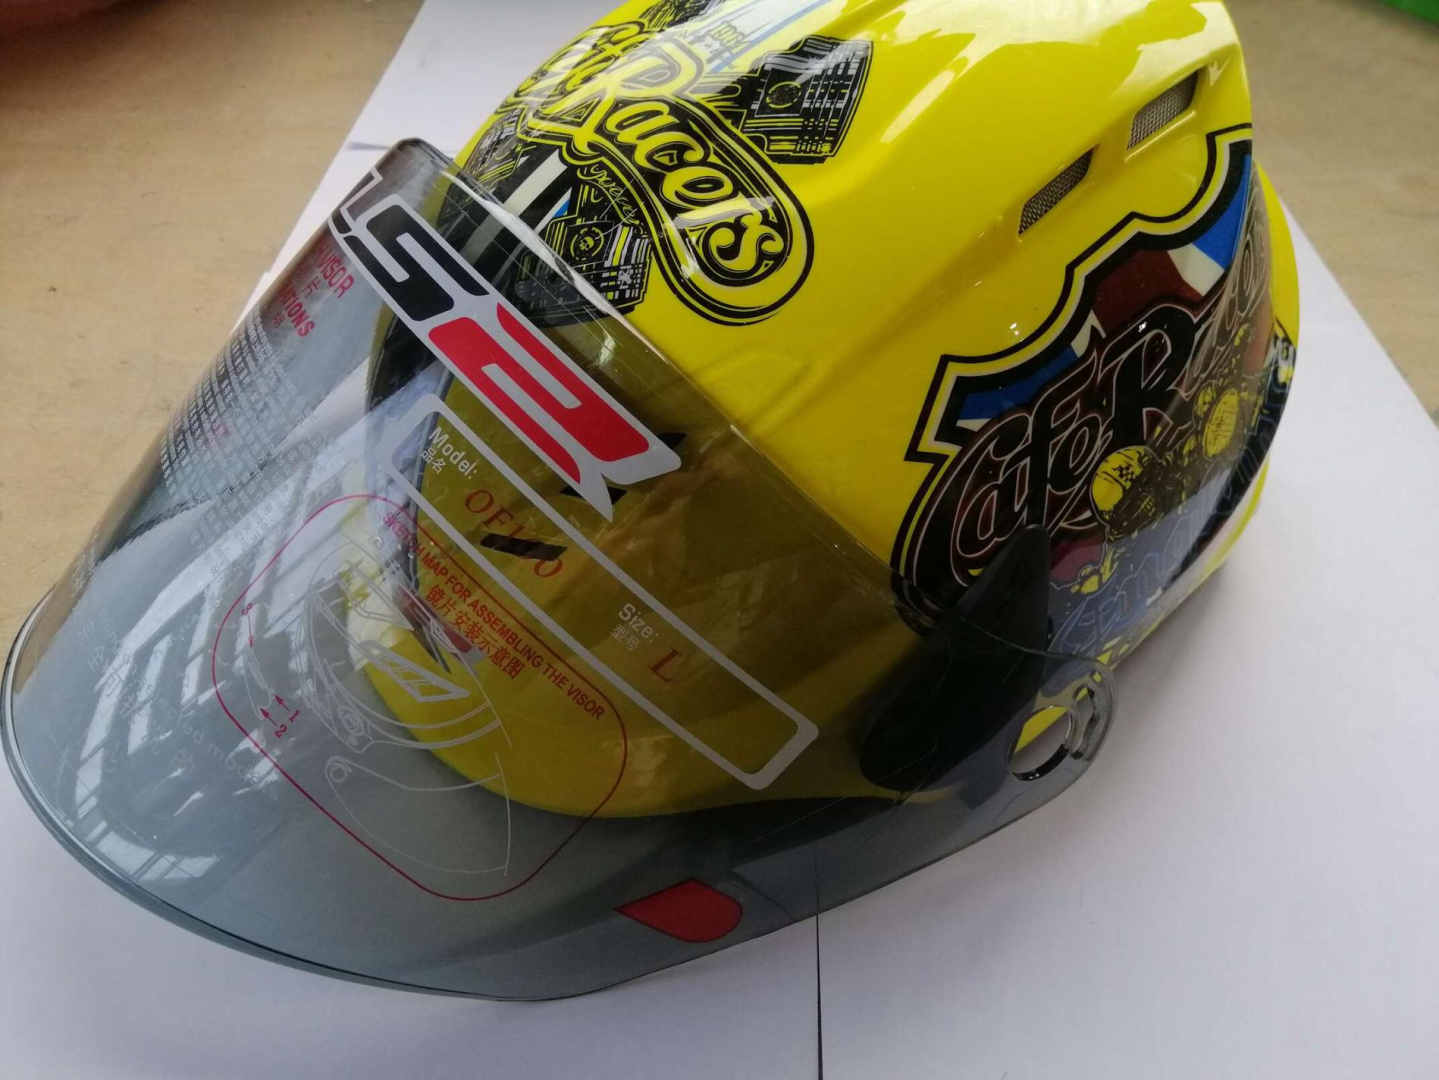 Шлем открытый   (mod:100) (аэроформа, черный визор) (size:XL, желтый)   LS2